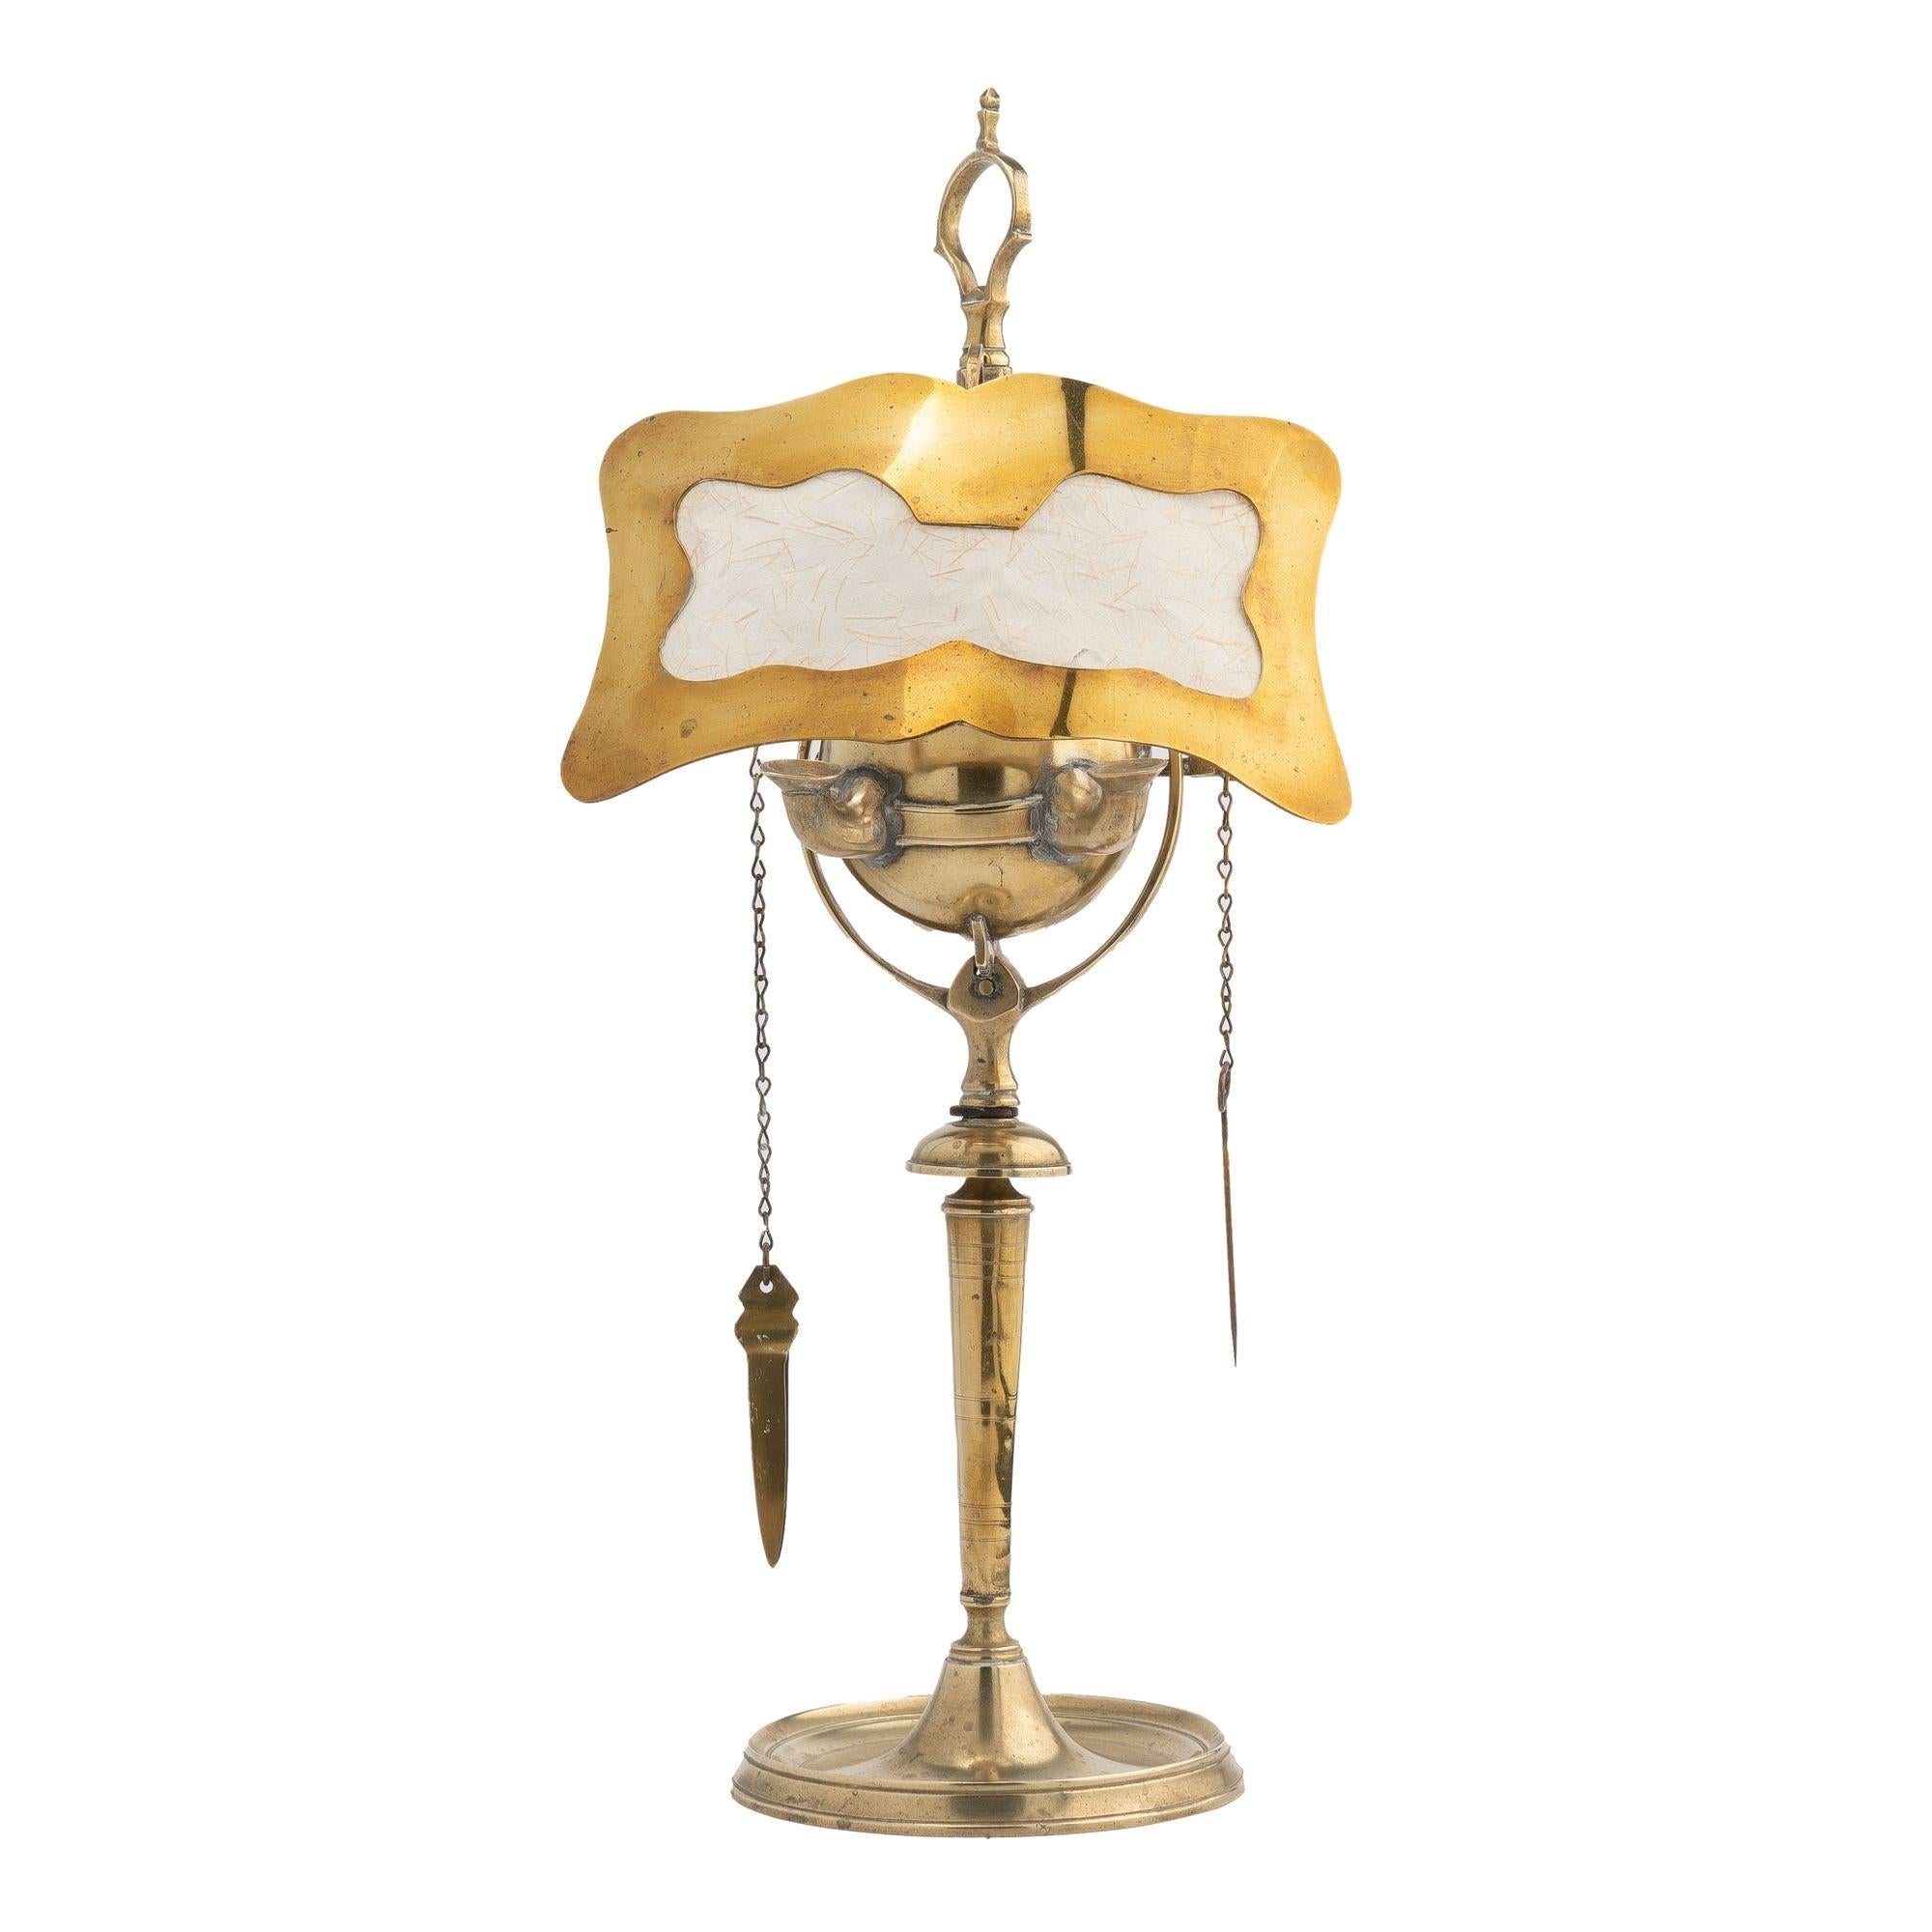 Zweiflammige Luzerner Öllampe aus Messingguss mit hängendem Docht und dem originalen Messingschirm mit Reispapiereinsatz.
Italienisch, um 1800.